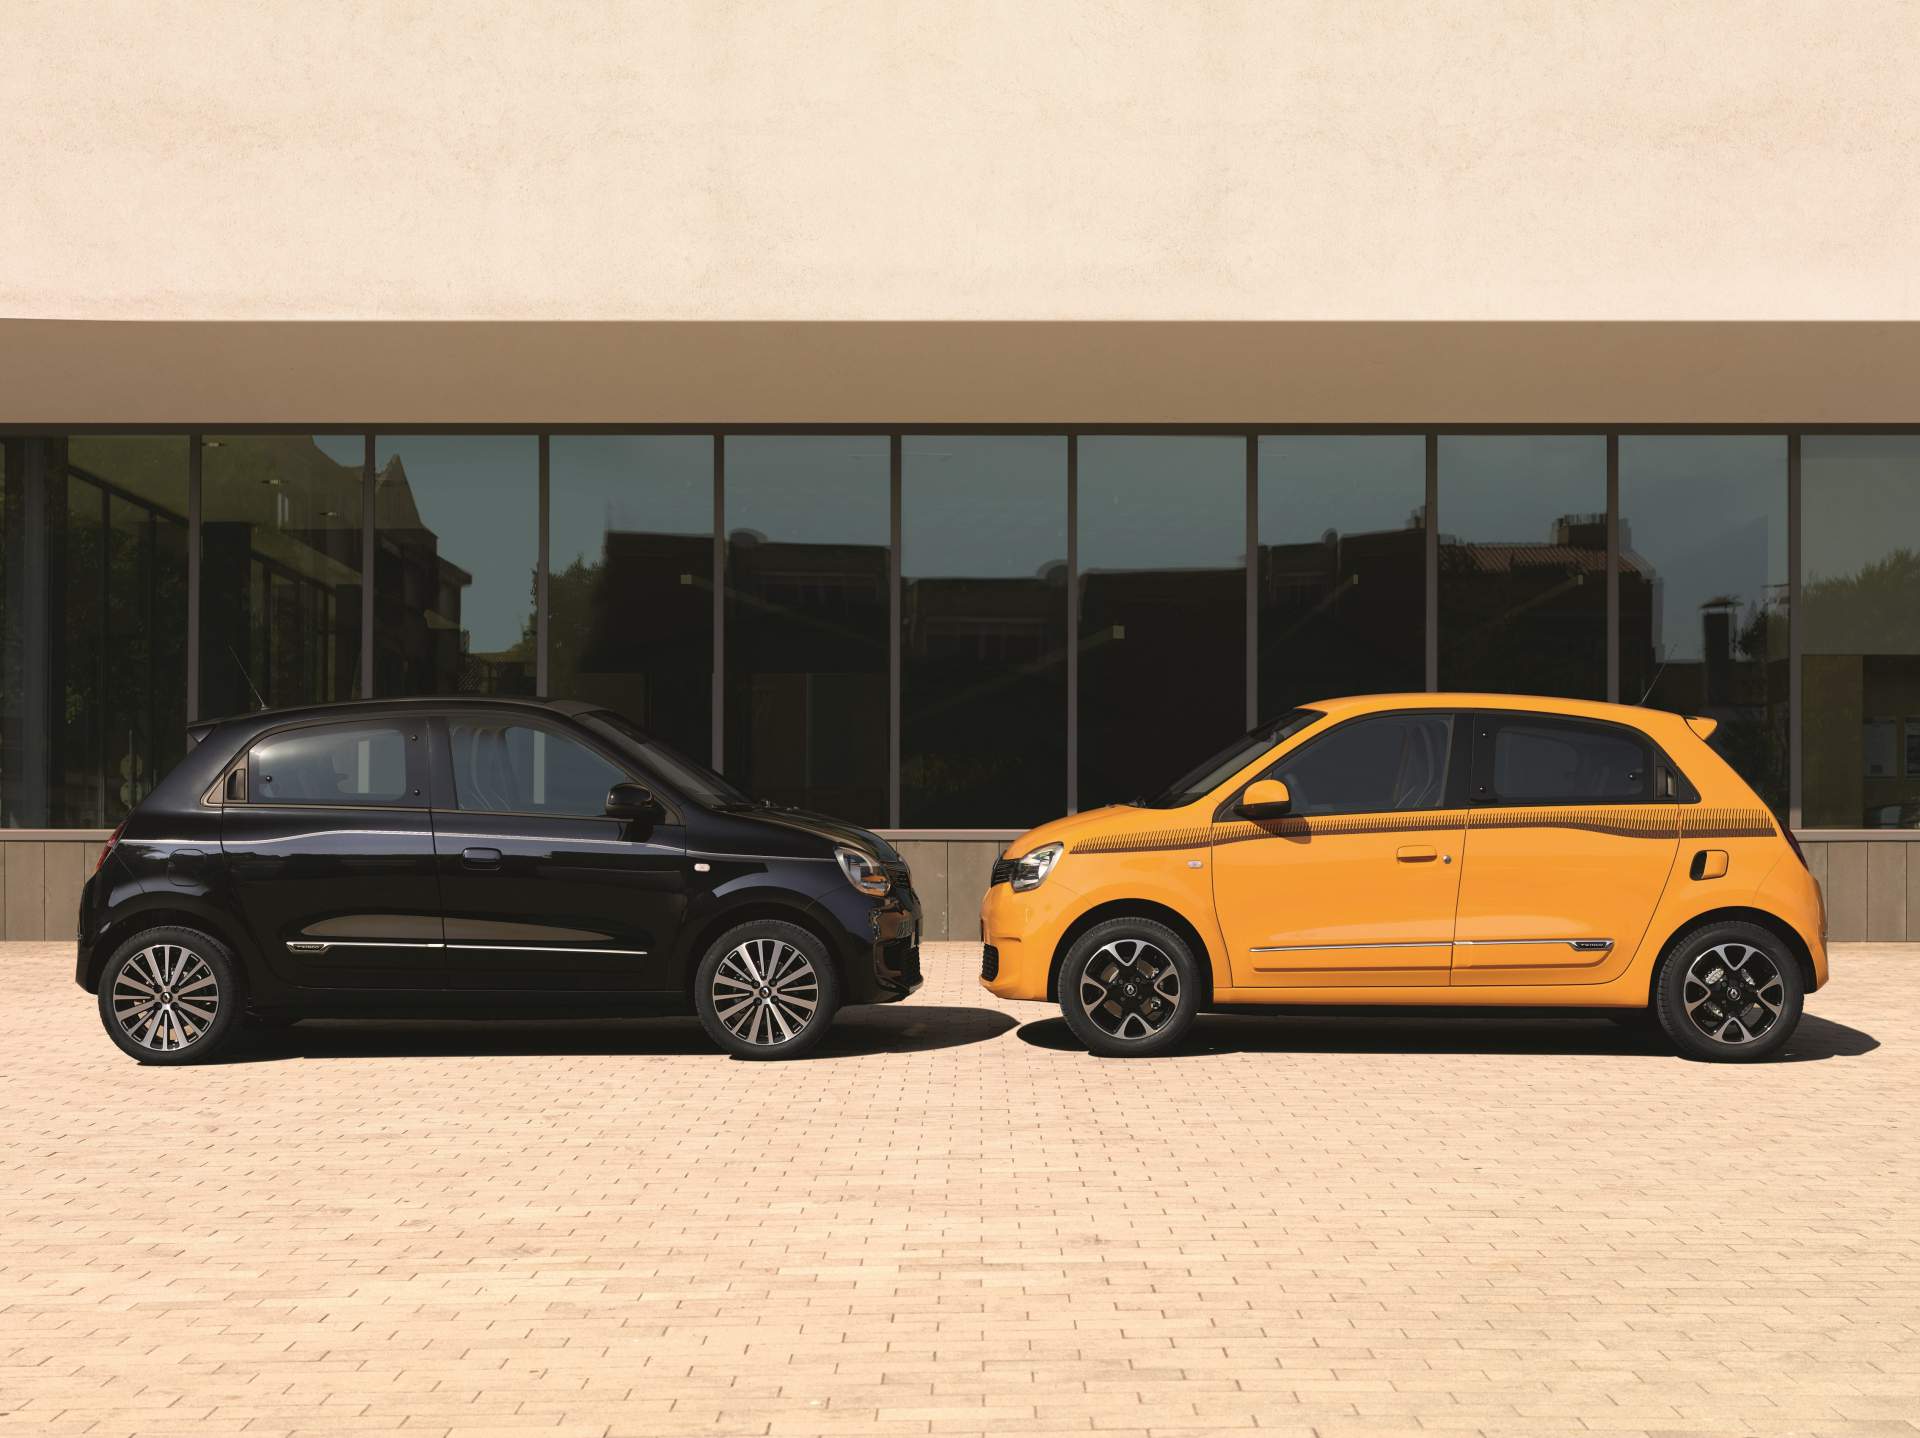 2019 Renault Twingo tanıtıldı: Yeni renk ve motor seçenekleri